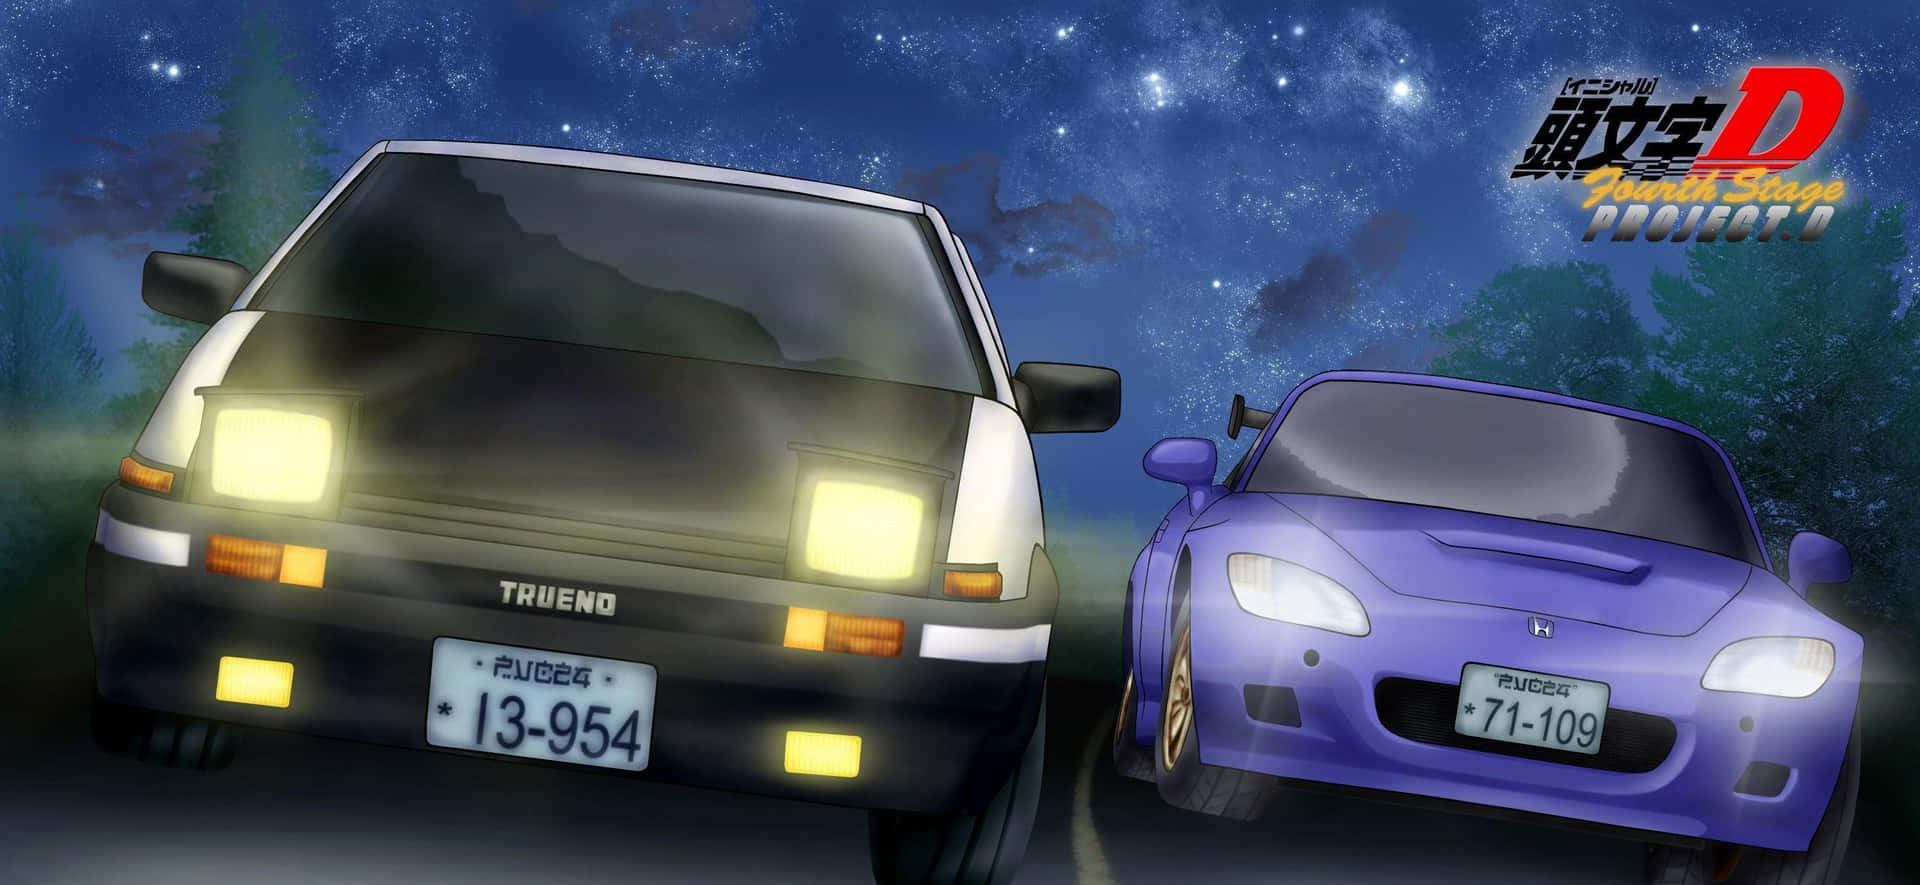 Toyotaae86 Und Subaru Impreza Wrx Sti Initial D Hintergrund